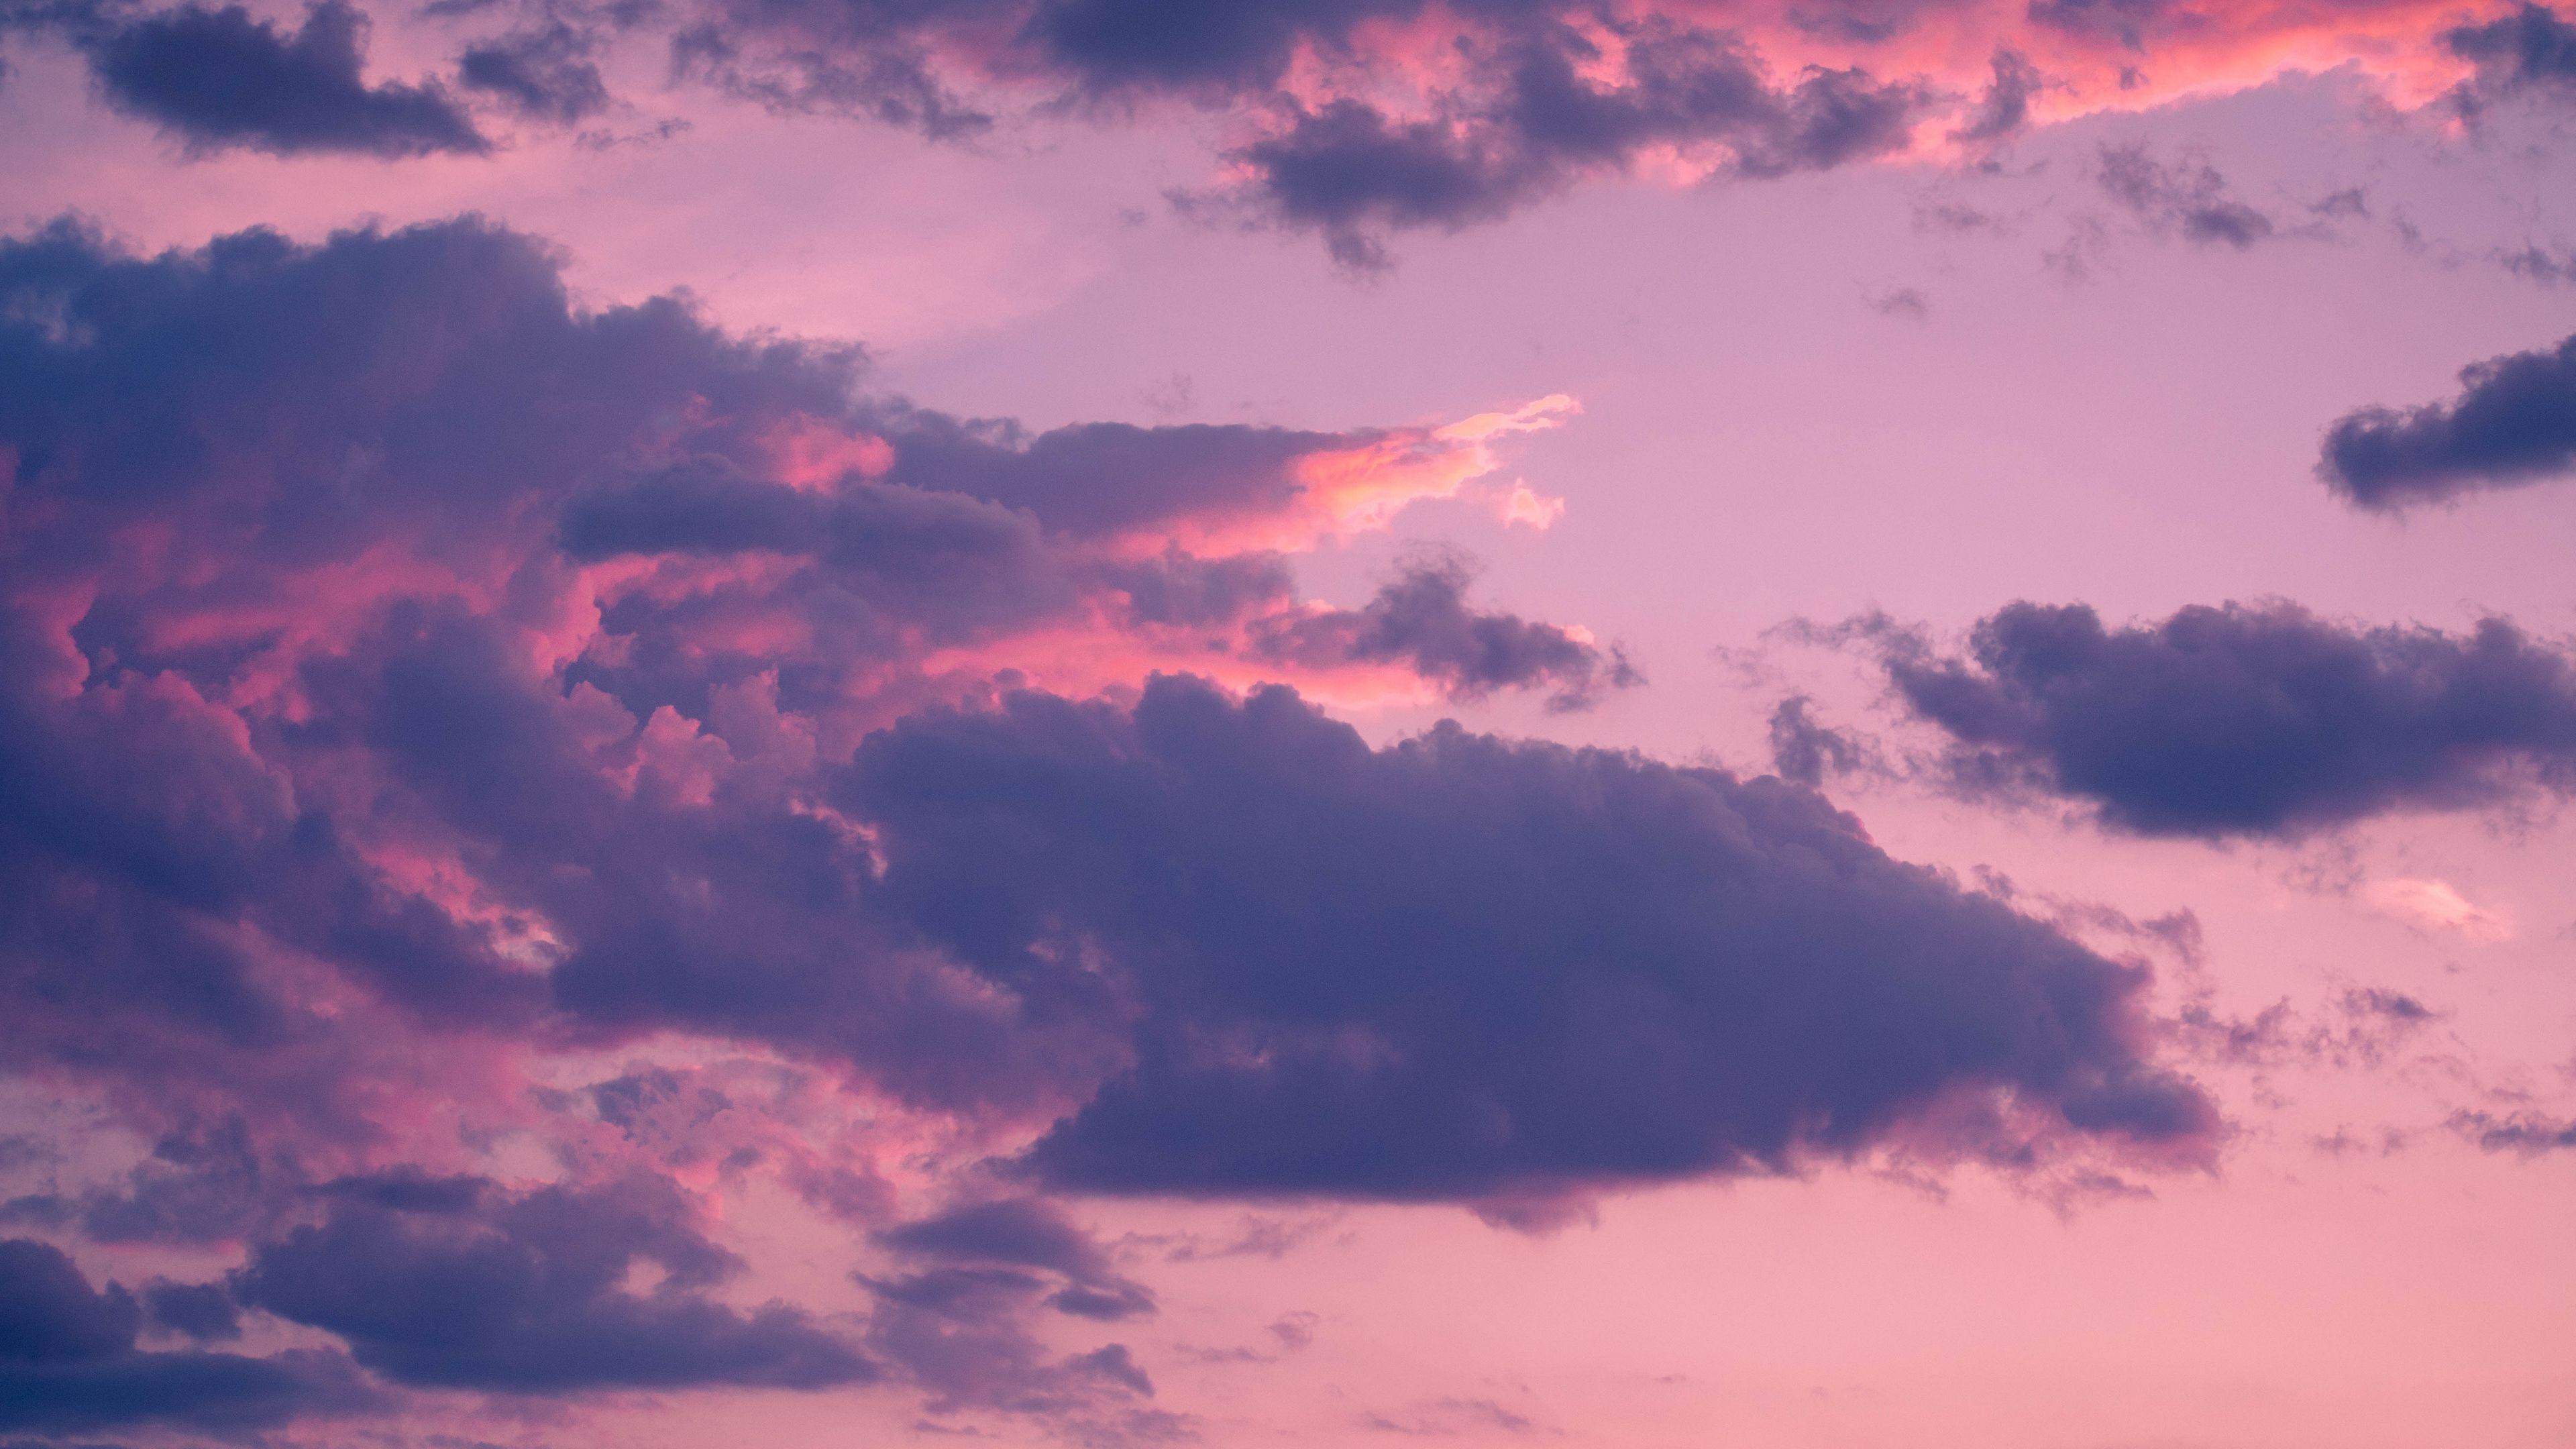 Với các hình nền sử dụng những đám mây màu hồng đáng yêu trong bức hình Pink Clouds Wallpapers - Top Những Hình Ảnh Đẹp Aesthetic background 16x9, bạn sẽ tìm thấy một thành phố đầy màu sắc, tình cảm và ngớ ngẩn. Hãy thưởng thức vẻ đẹp tuyệt đẹp của nó!